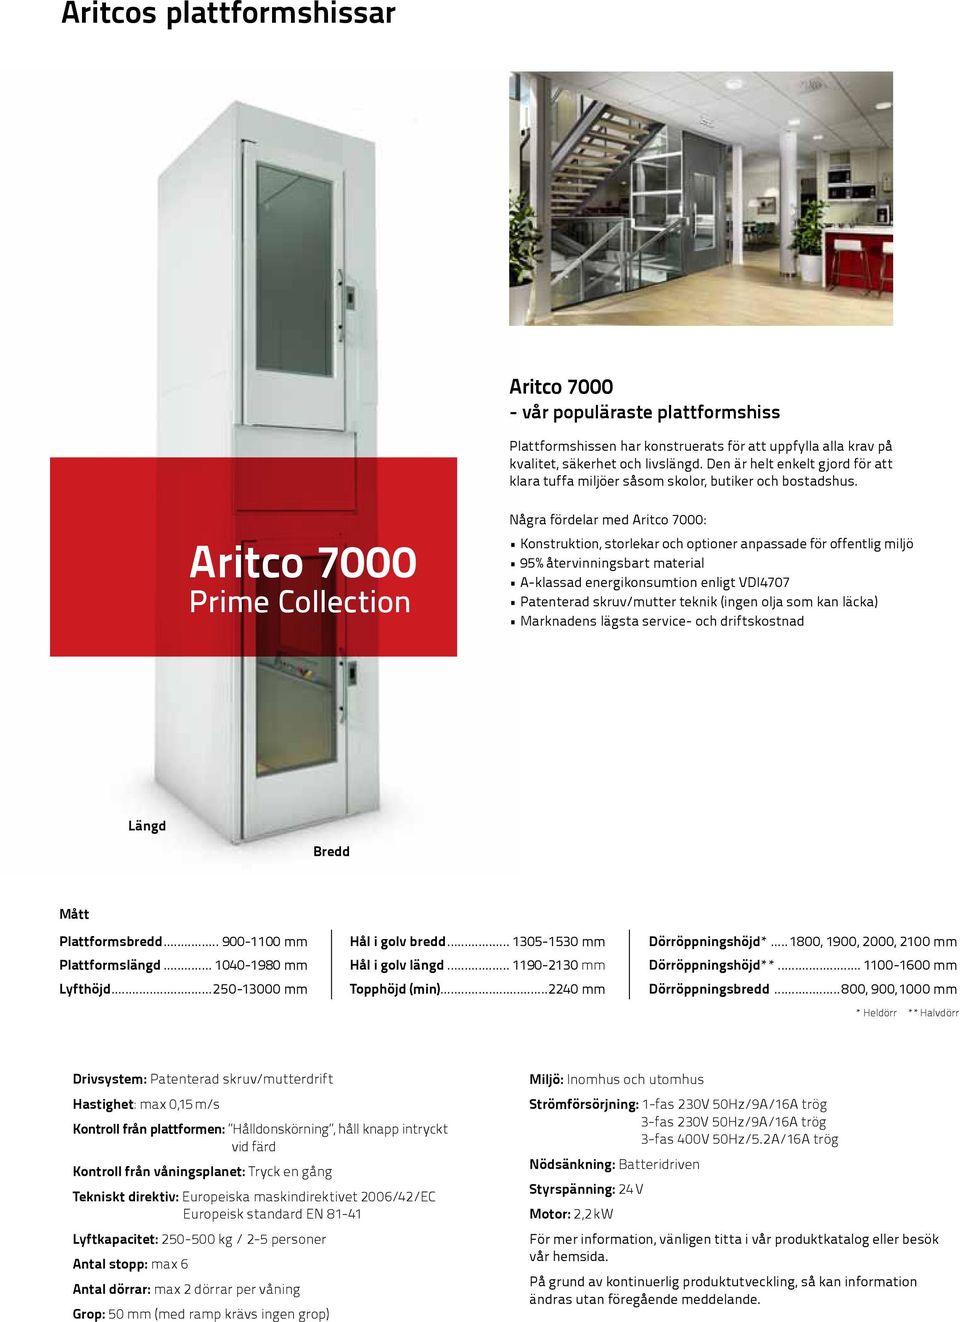 Aritco 7000 Prime Collection Några fördelar med Aritco 7000: Konstruktion, storlekar och optioner anpassade för offentlig miljö 95% återvinningsbart material A-klassad energikonsumtion enligt VDI4707